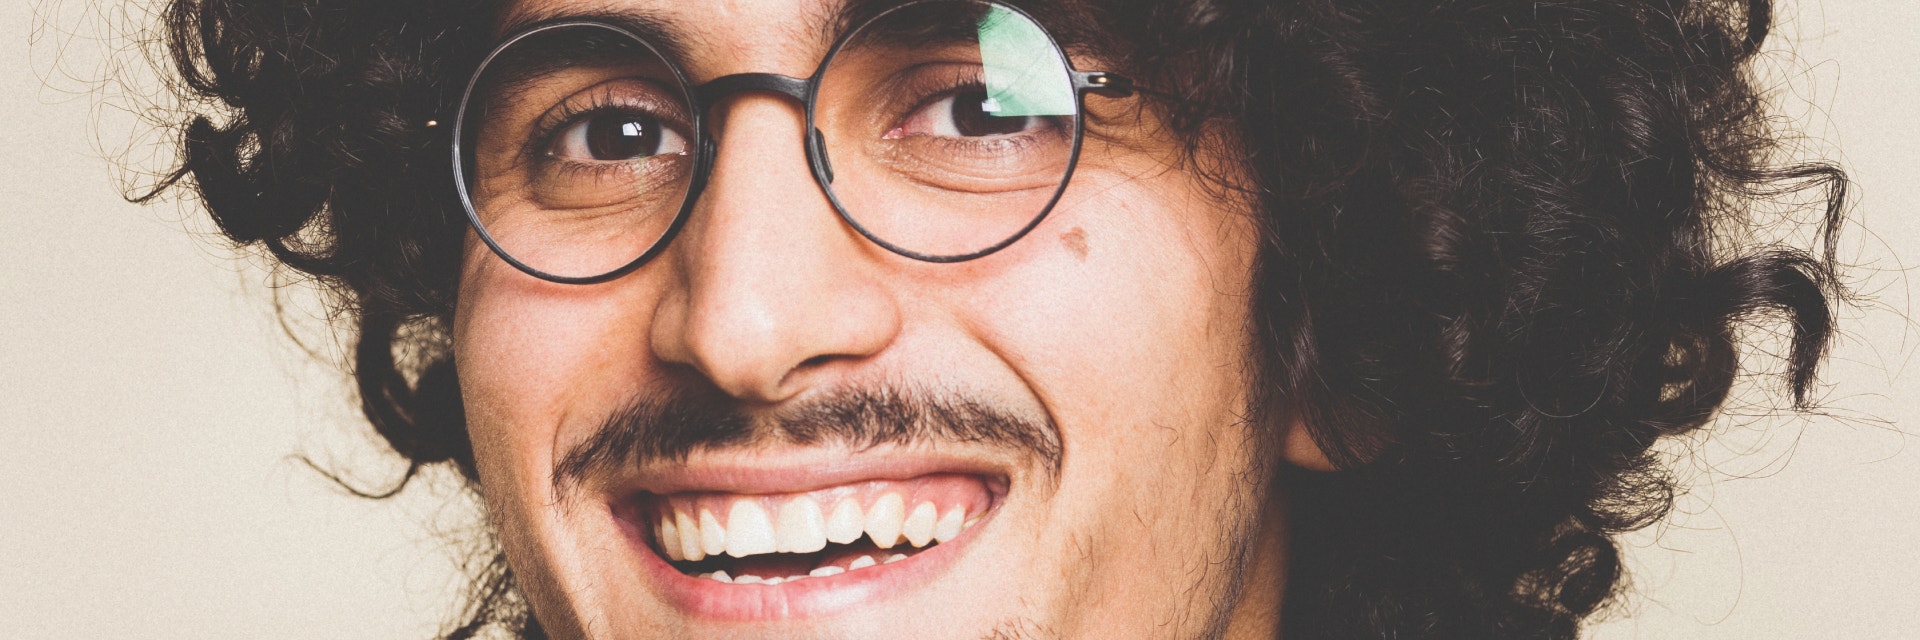 Lächelnder Mann mit lockigem Haar und Schnurrbart, während er eine 3D-gedruckte Weareannu-Brille trägt